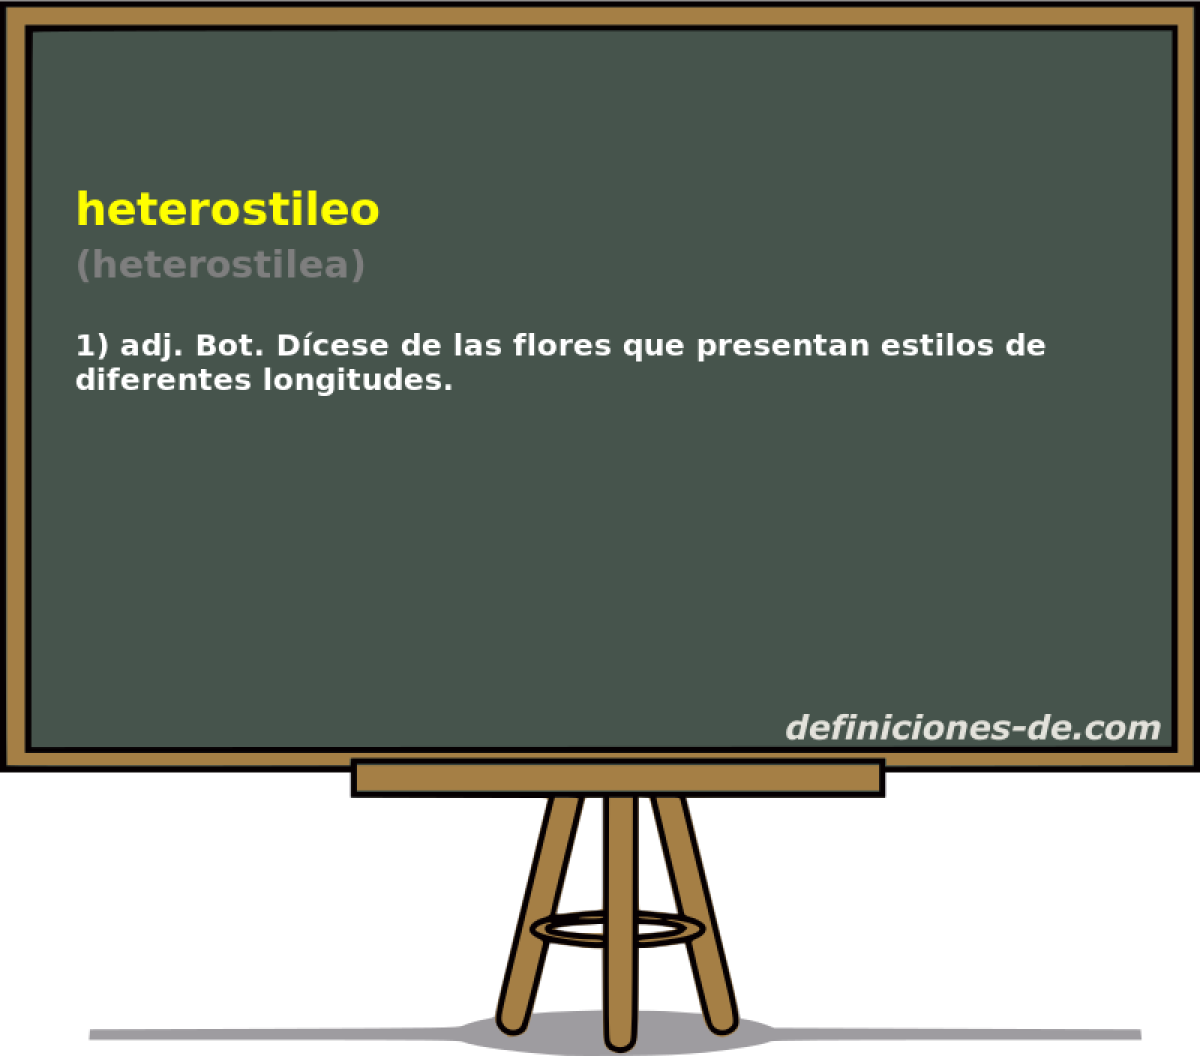 heterostileo (heterostilea)